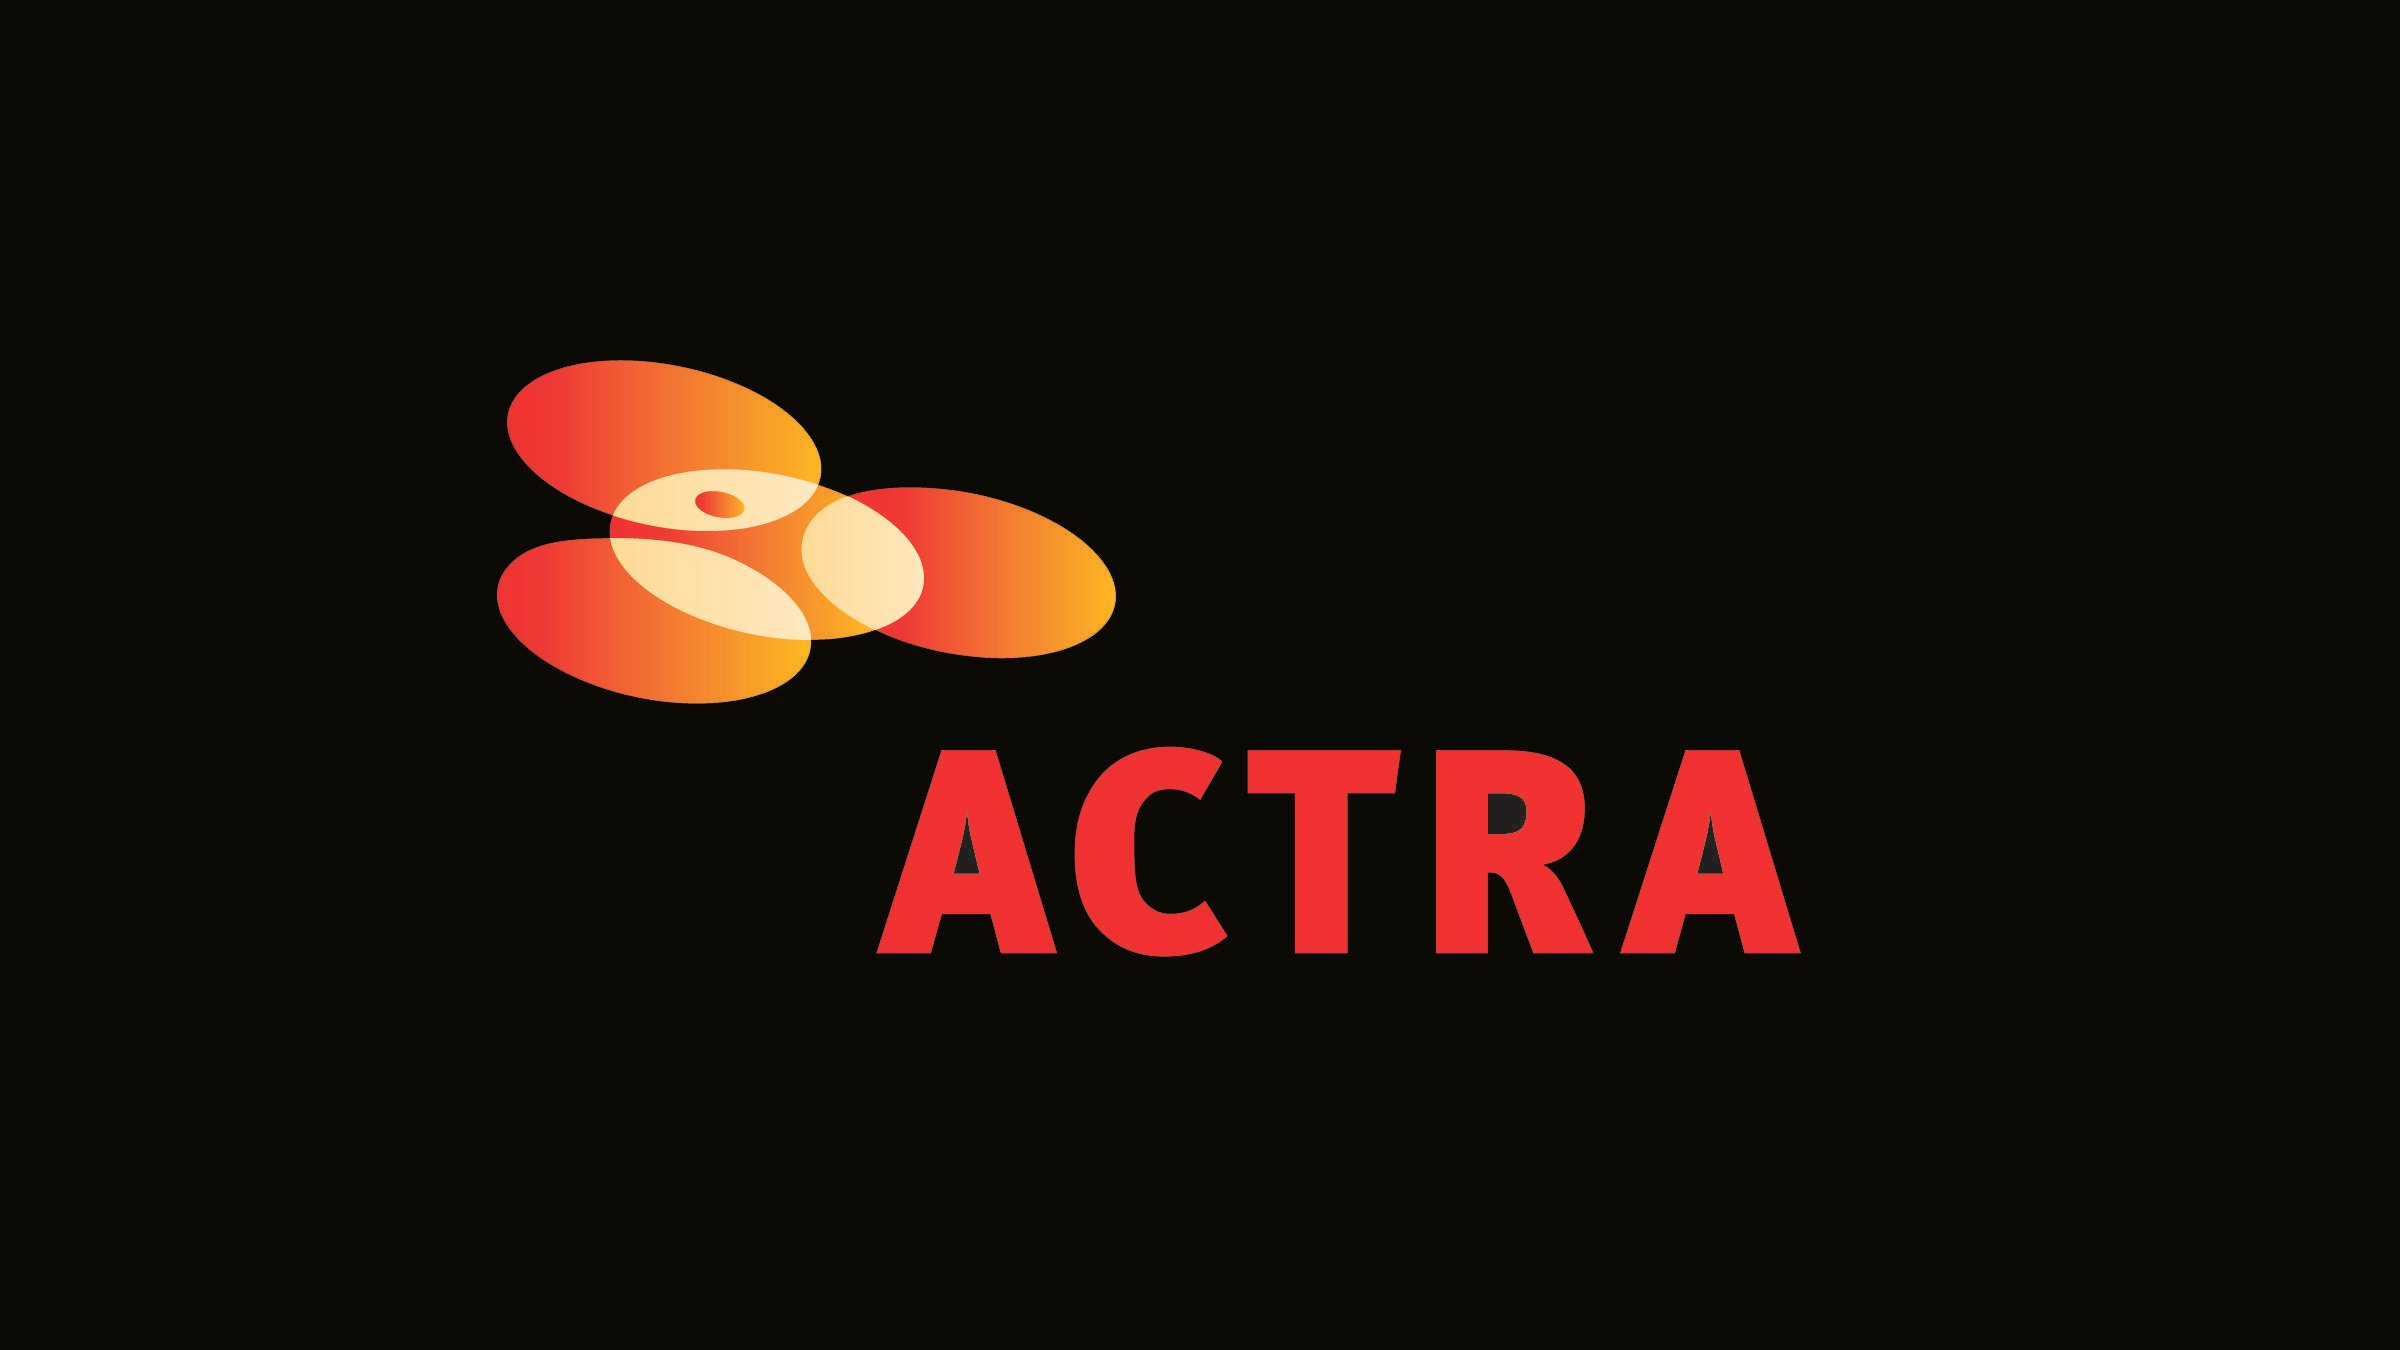 ACTRA Logo - Actra Logos